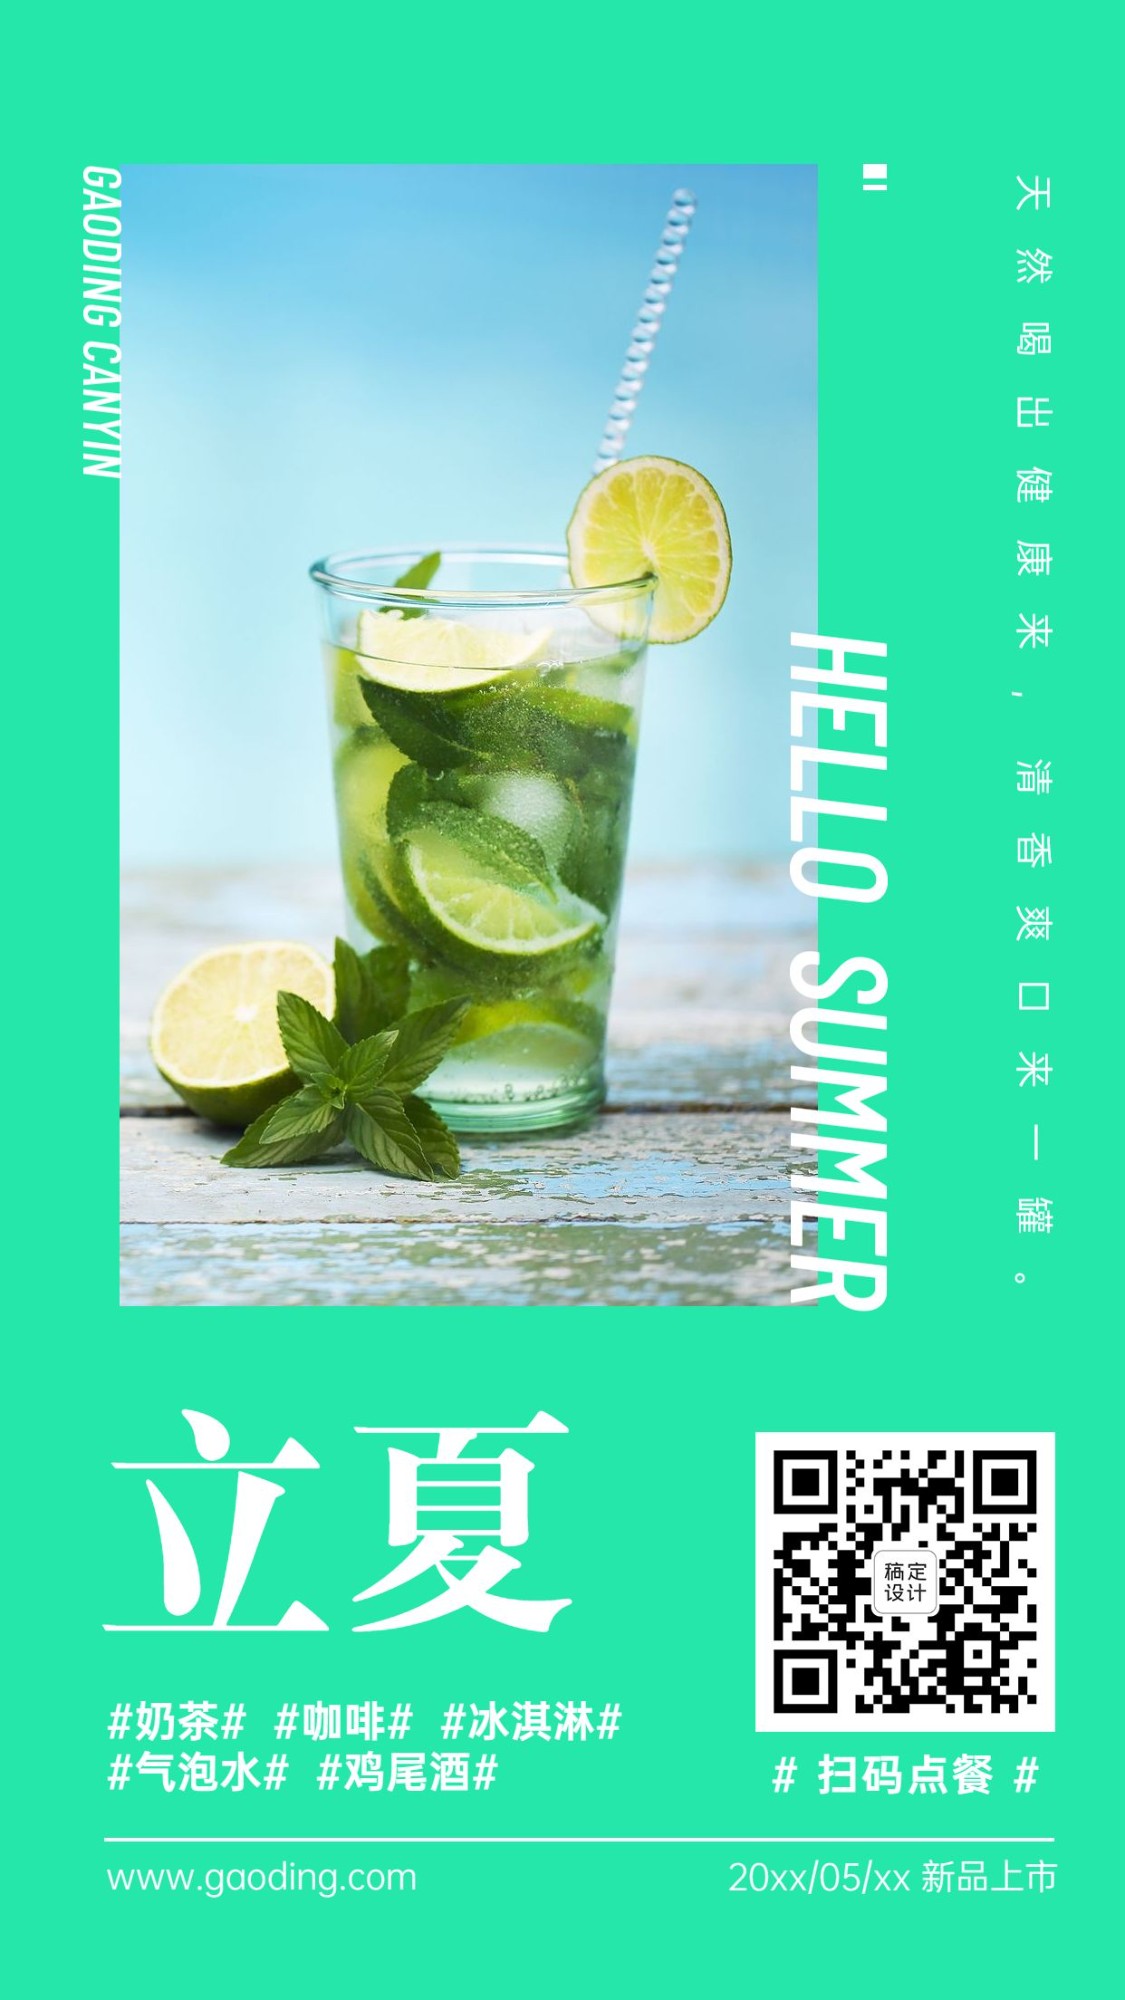 立夏节气奶茶饮品产品展示海报预览效果